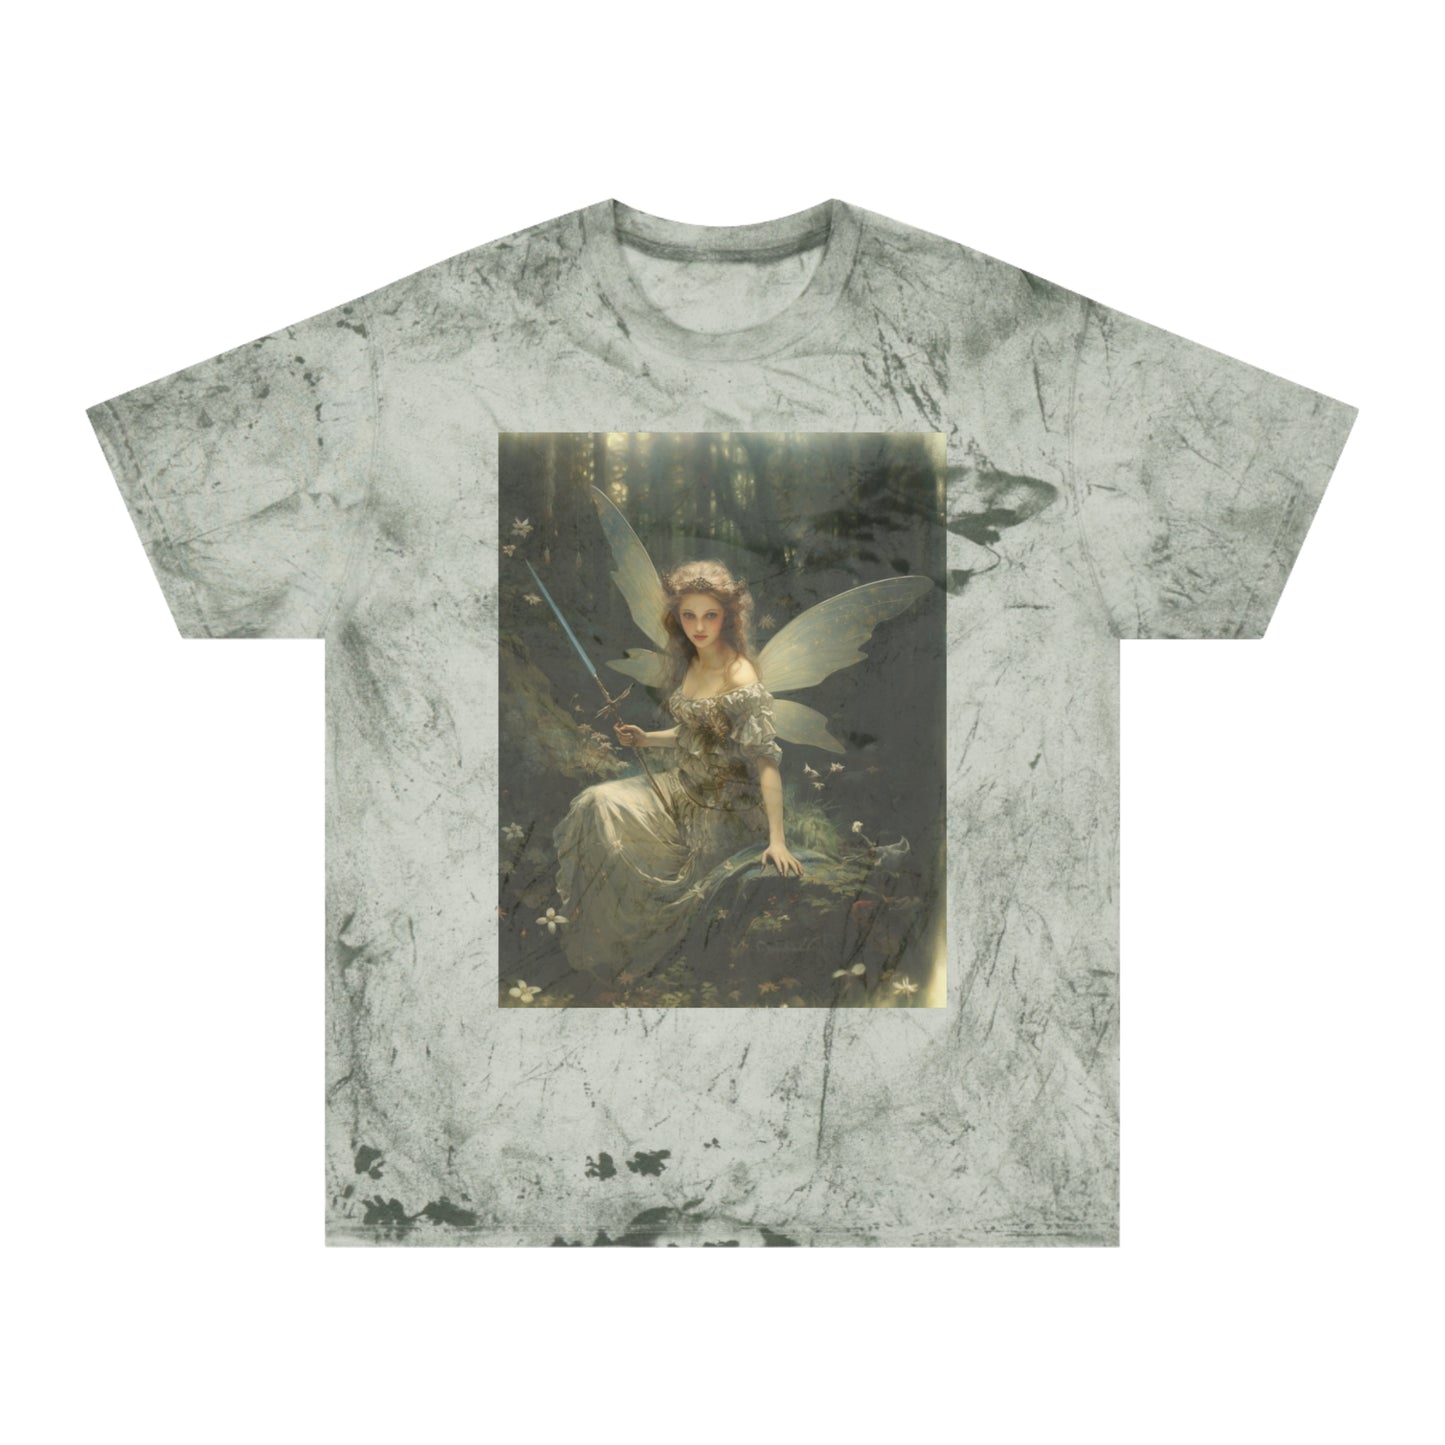 Grunge Fairycore Clothing, Vintage Tie Dye Forest Boho Cottagecore Aesthetic T-shirt